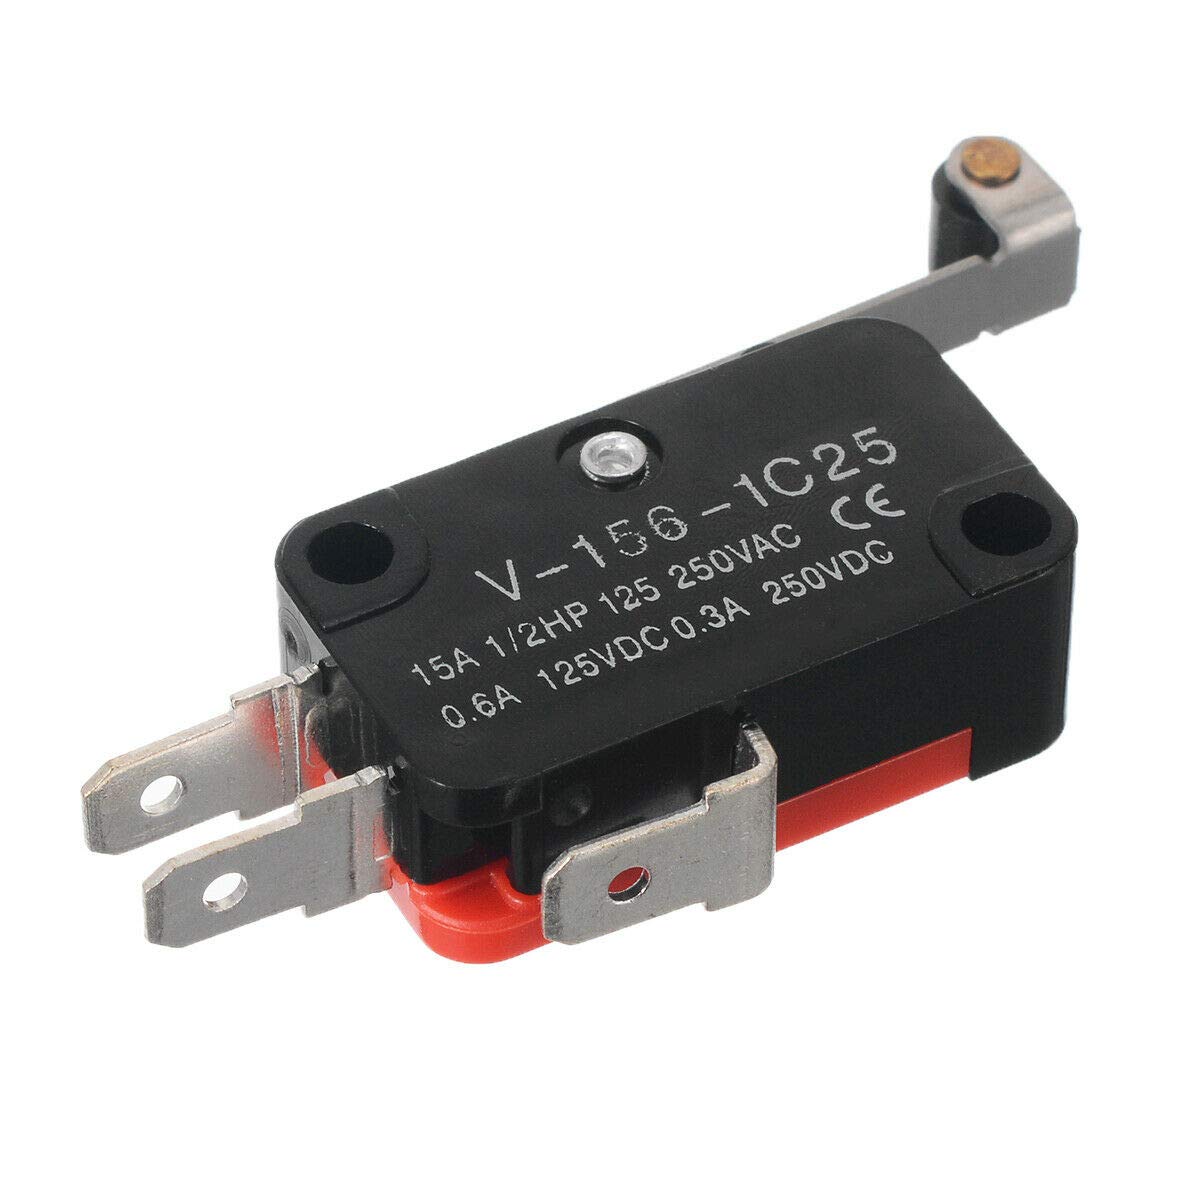 Paquete de 2-3 V-156-1C25 Micro interruptor de límite de palanca